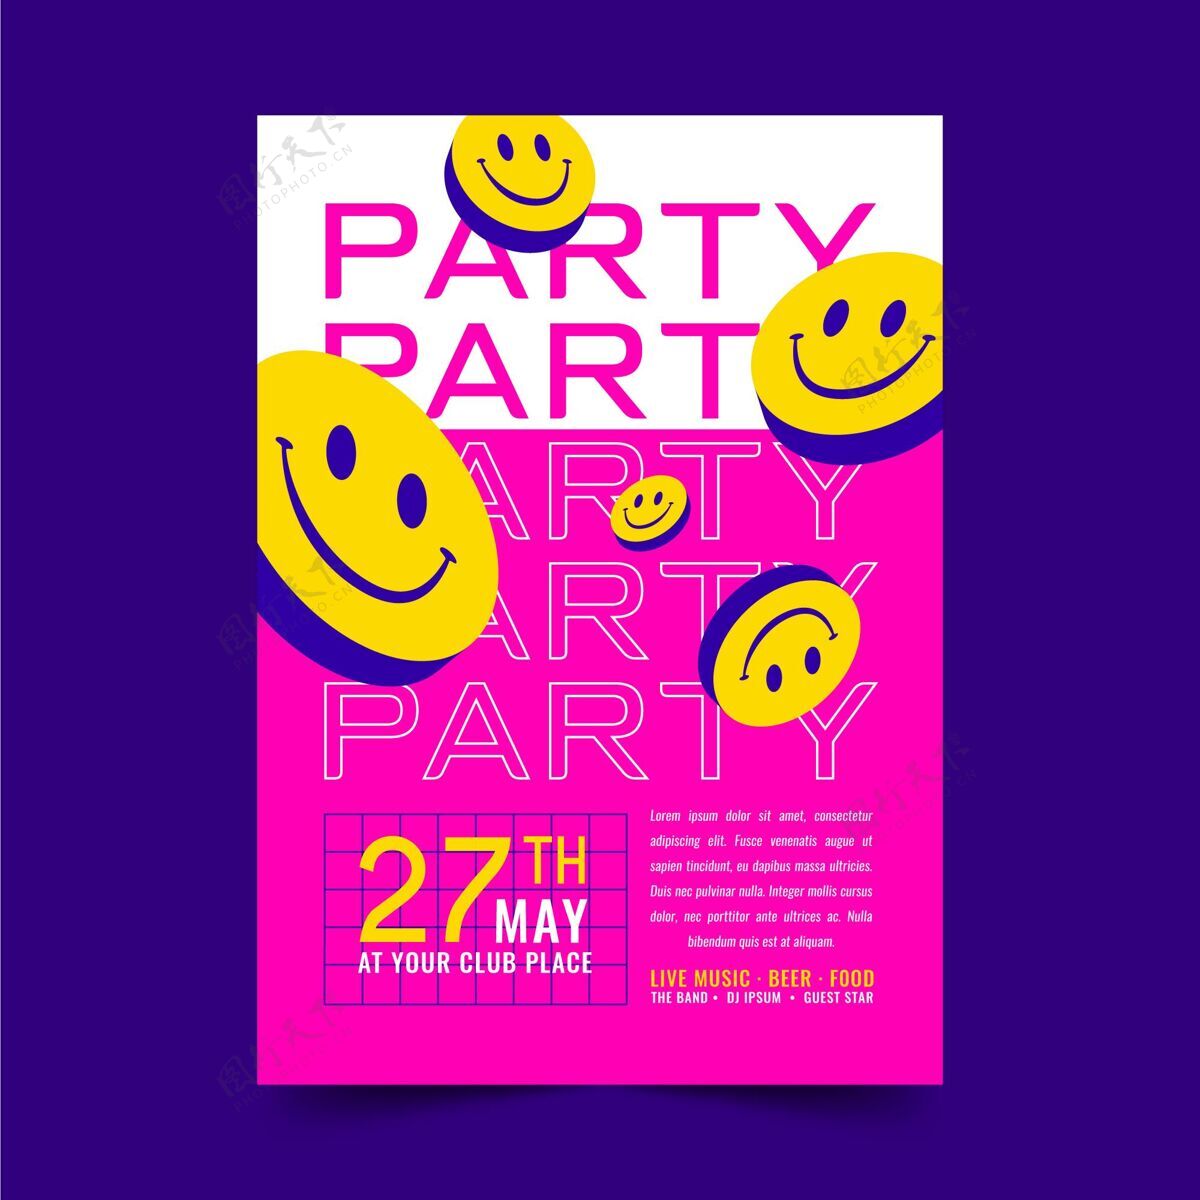 准备打印平面设计酸表情海报模板聚会节日节日